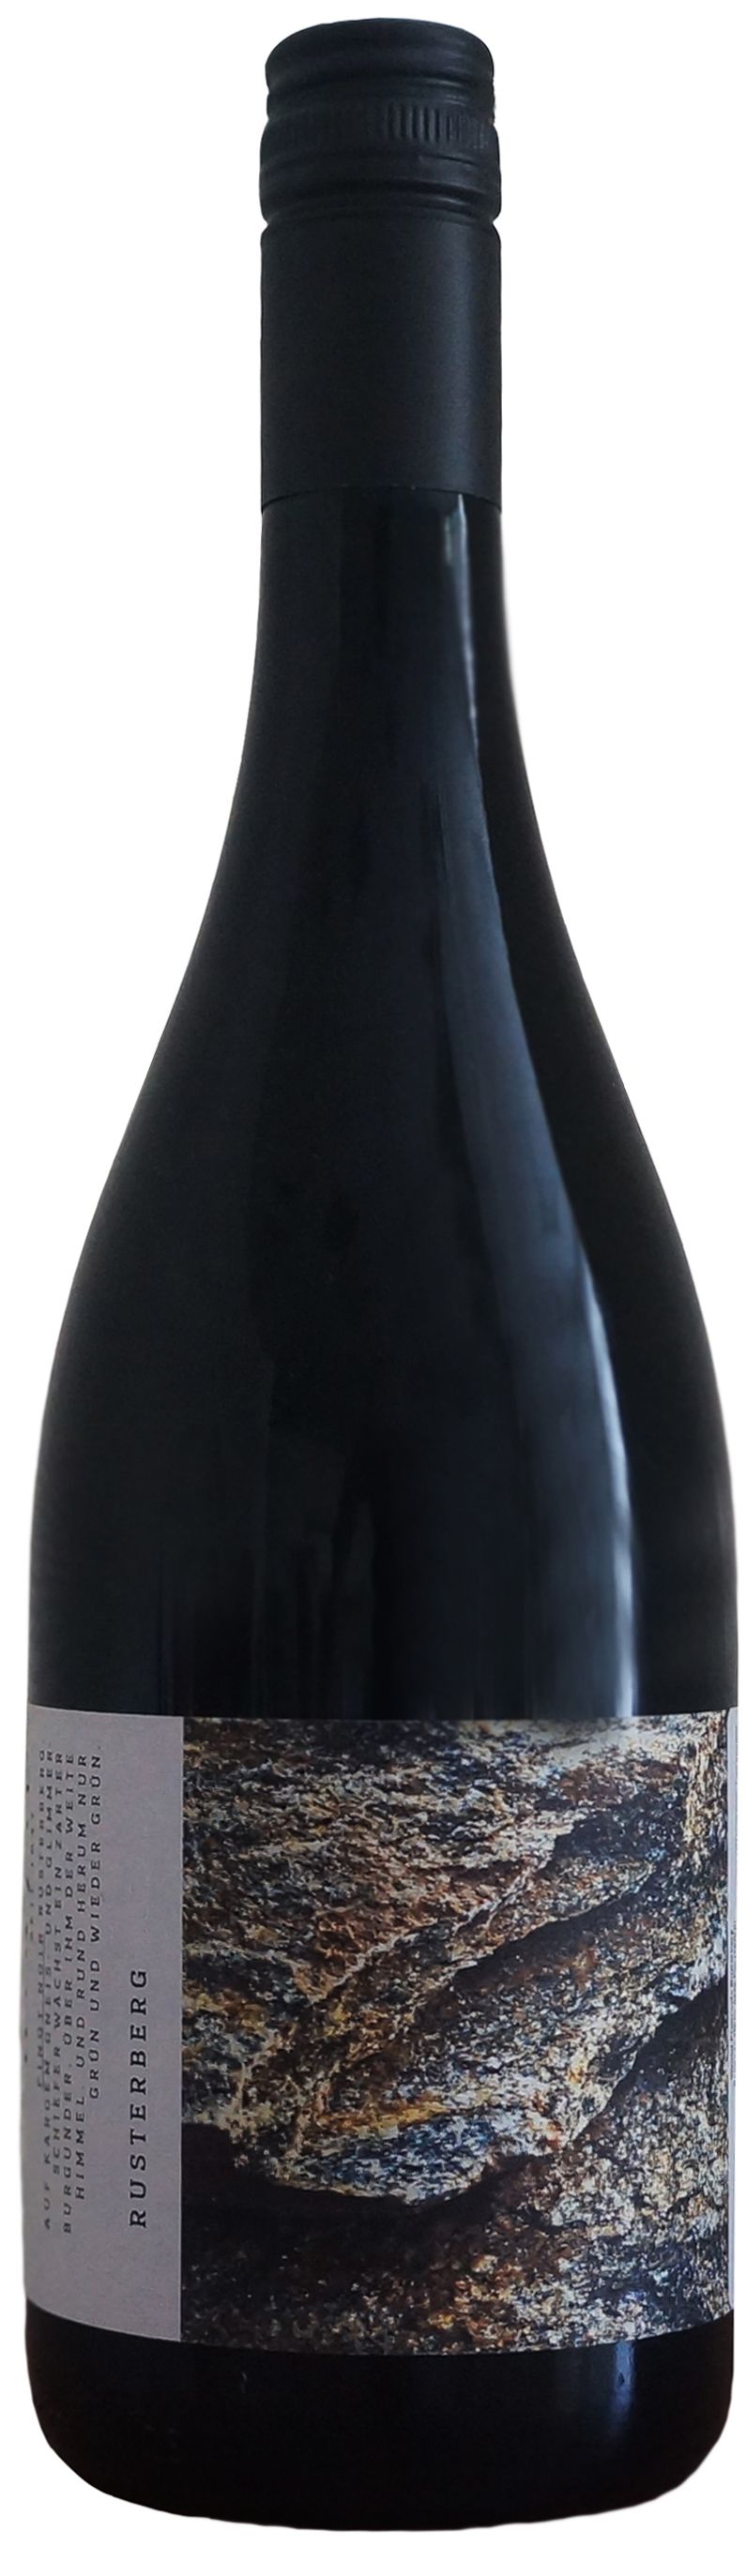 Wenzel, Rusterberg Pinot Noir, 2015